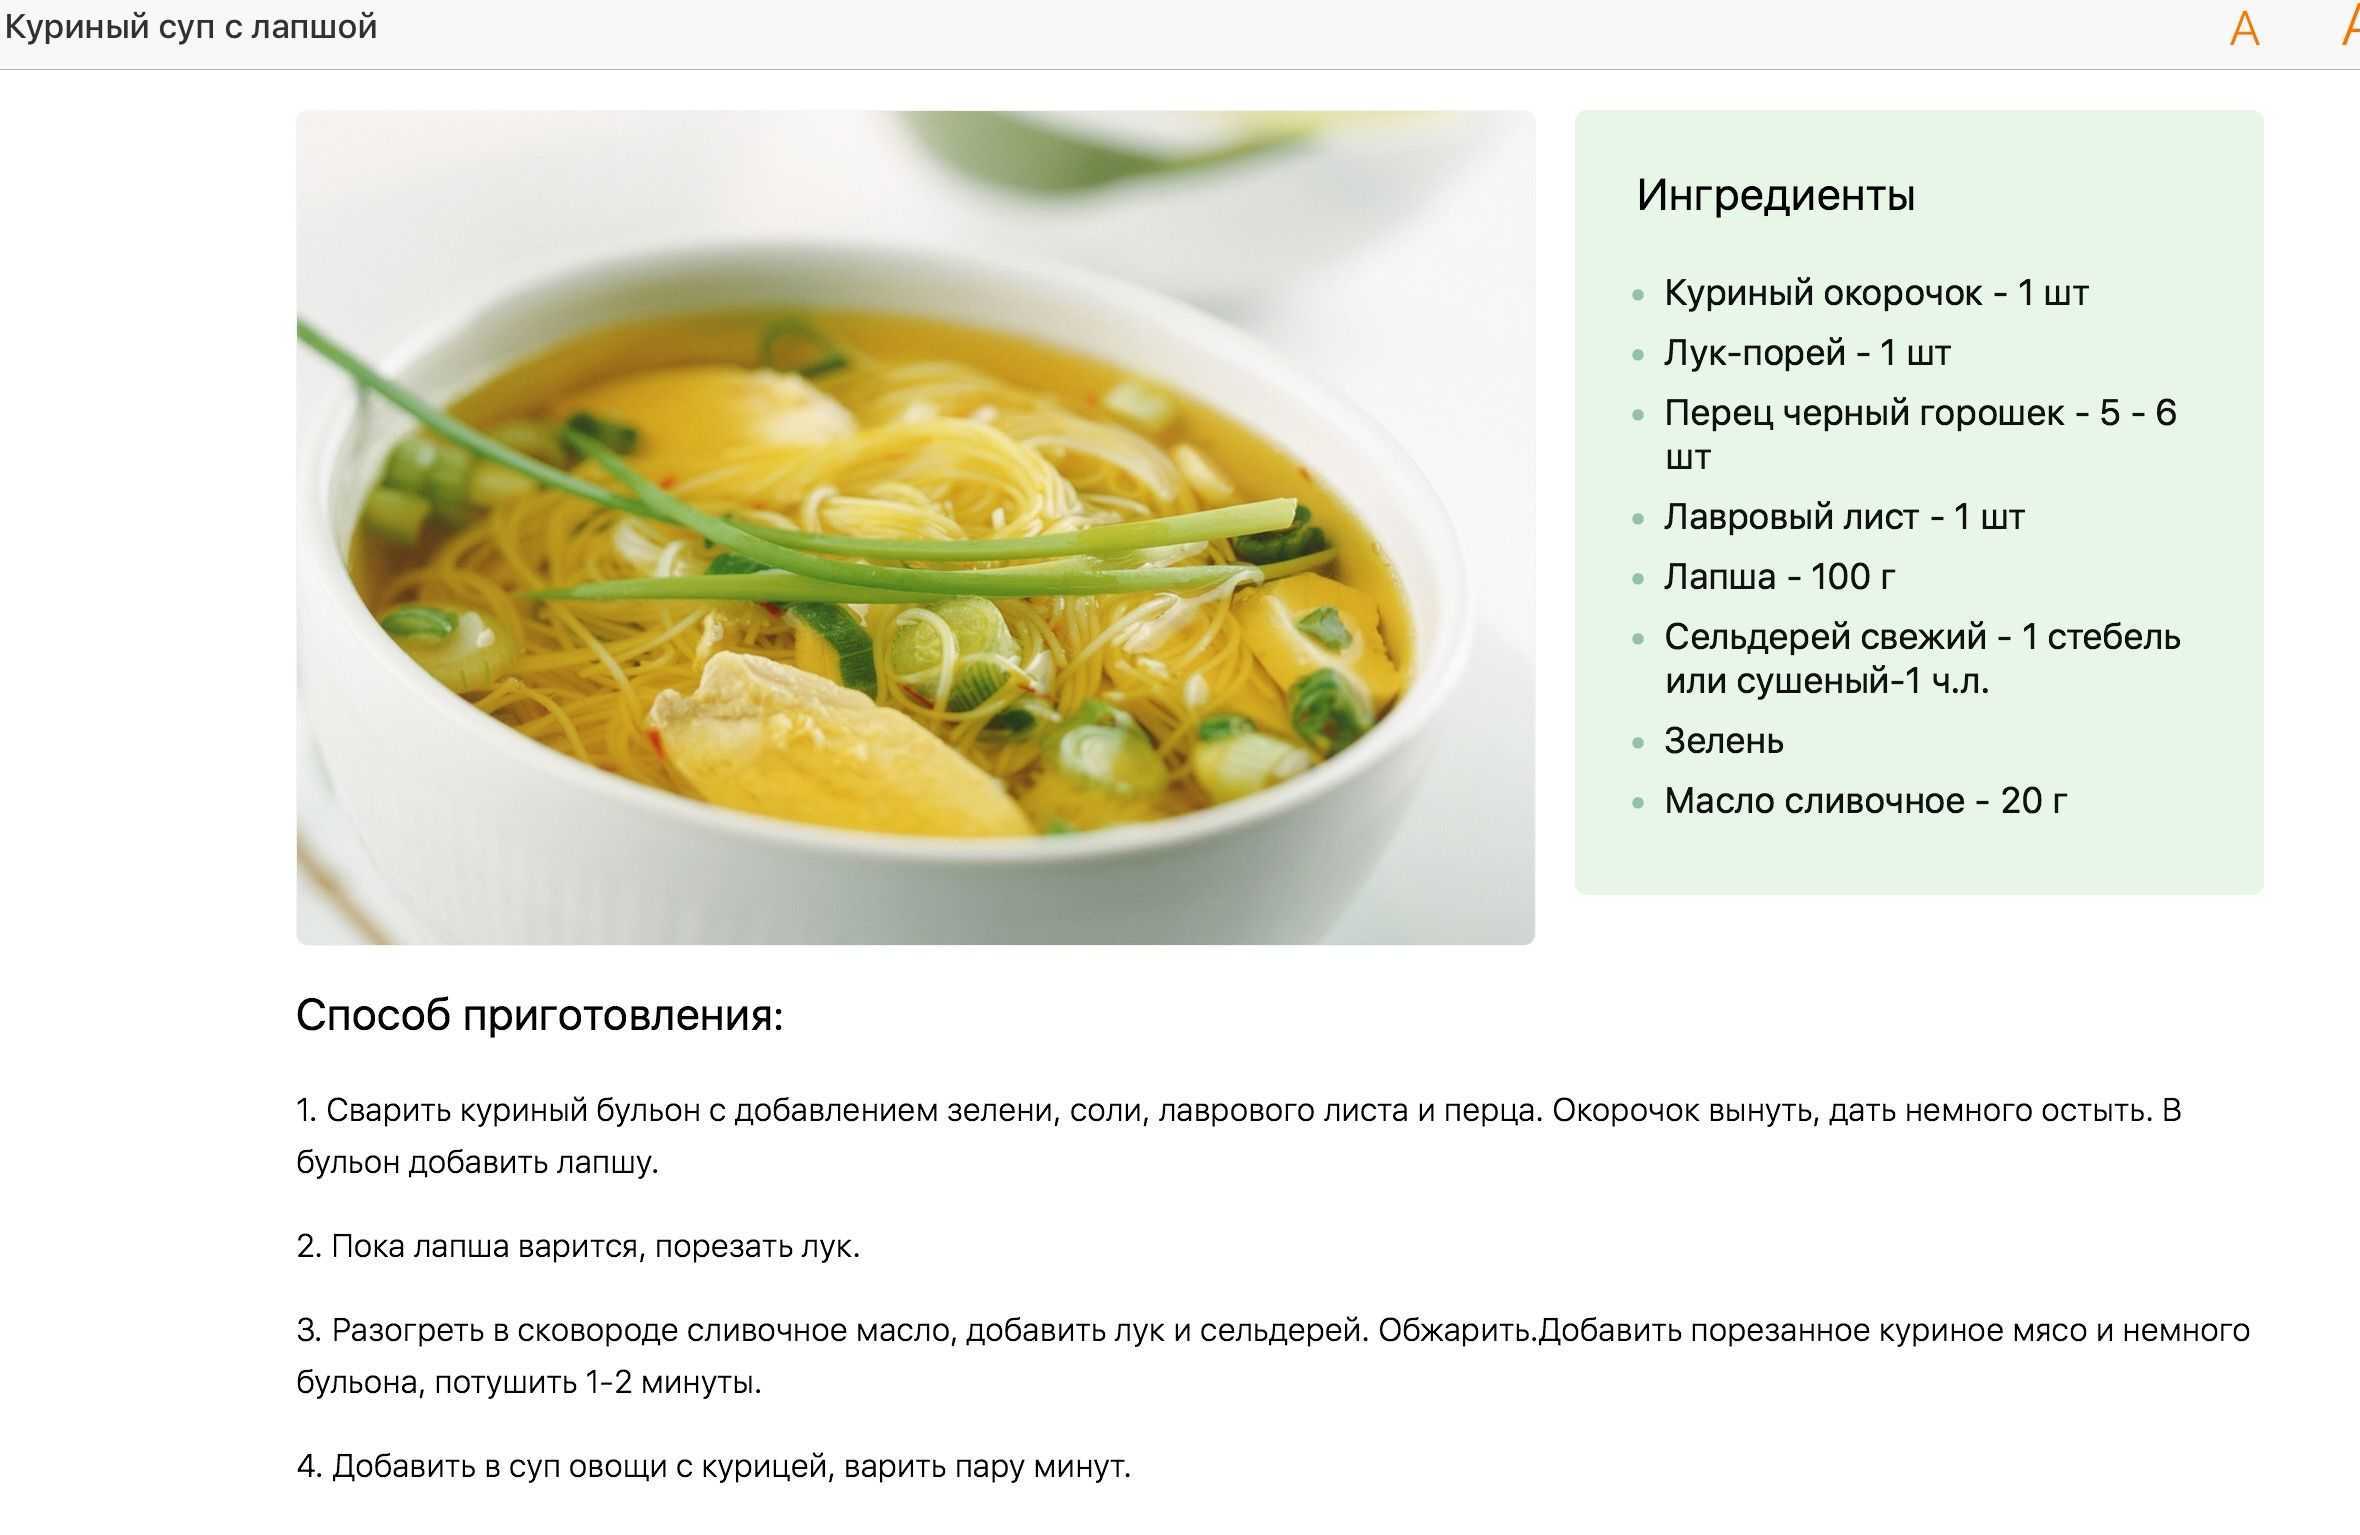 Суп с домашней лапшой и курицей - пошаговый рецепт самого вкусного куриного супа